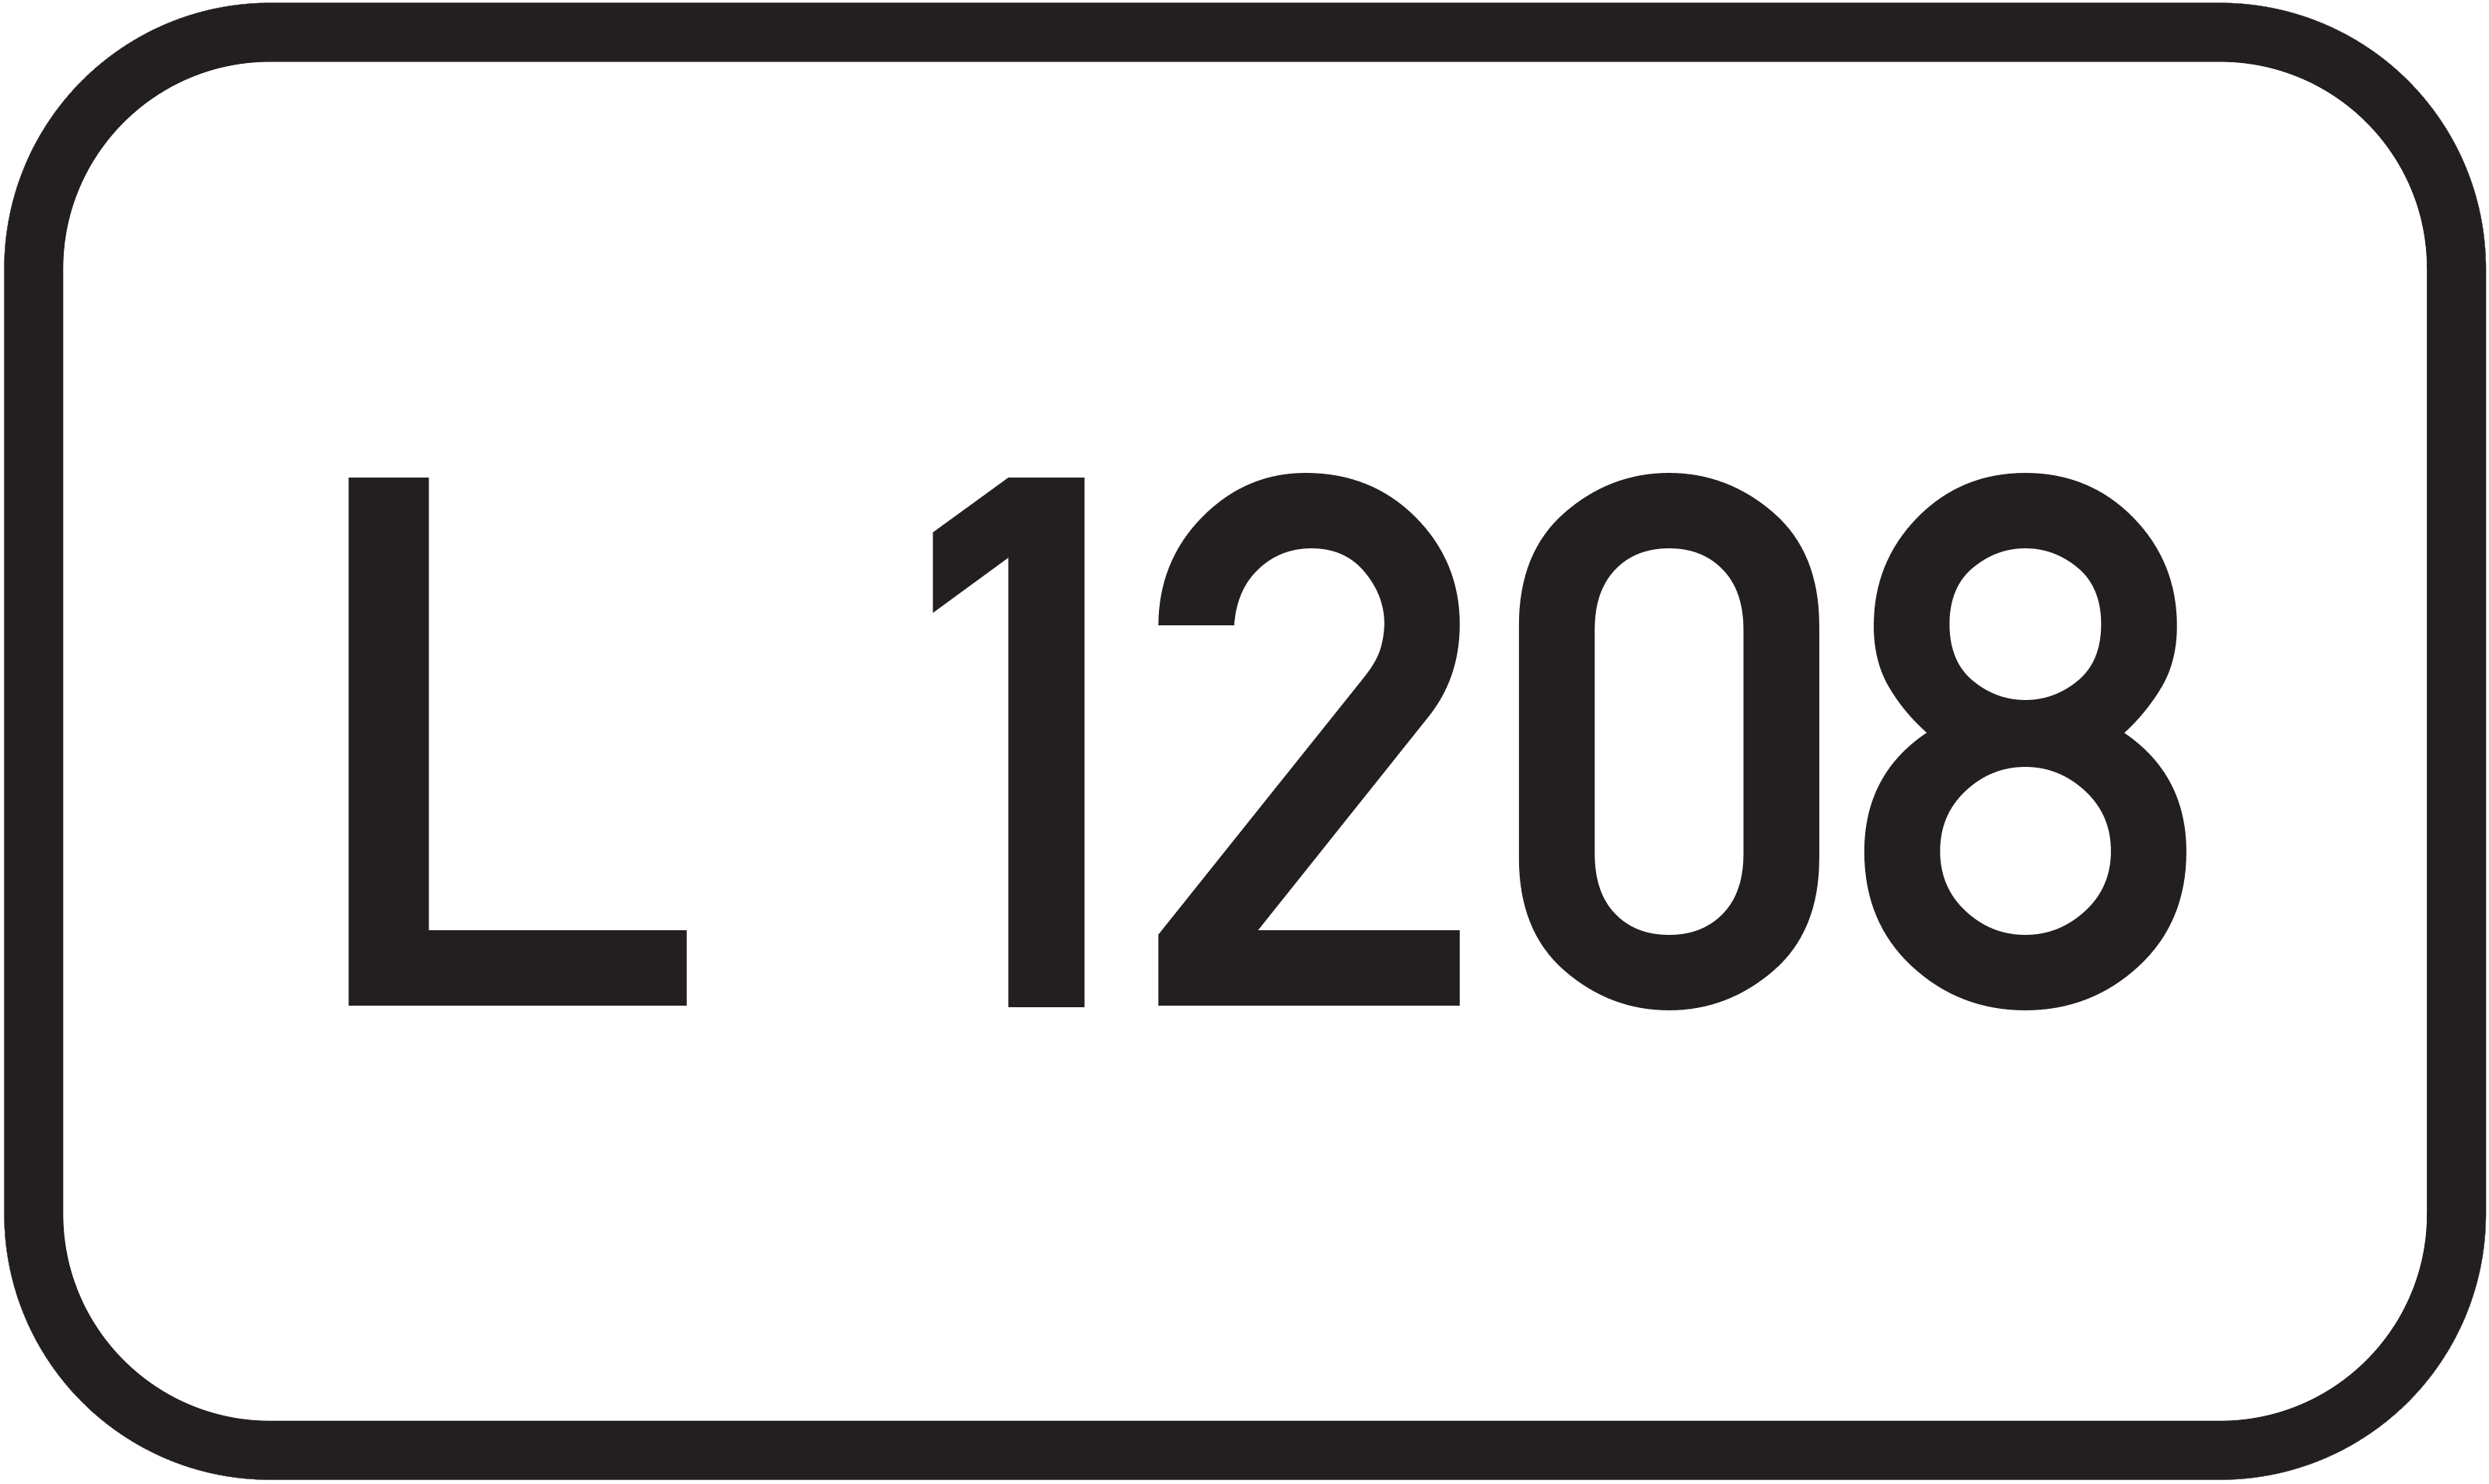 Landesstraße L 1208